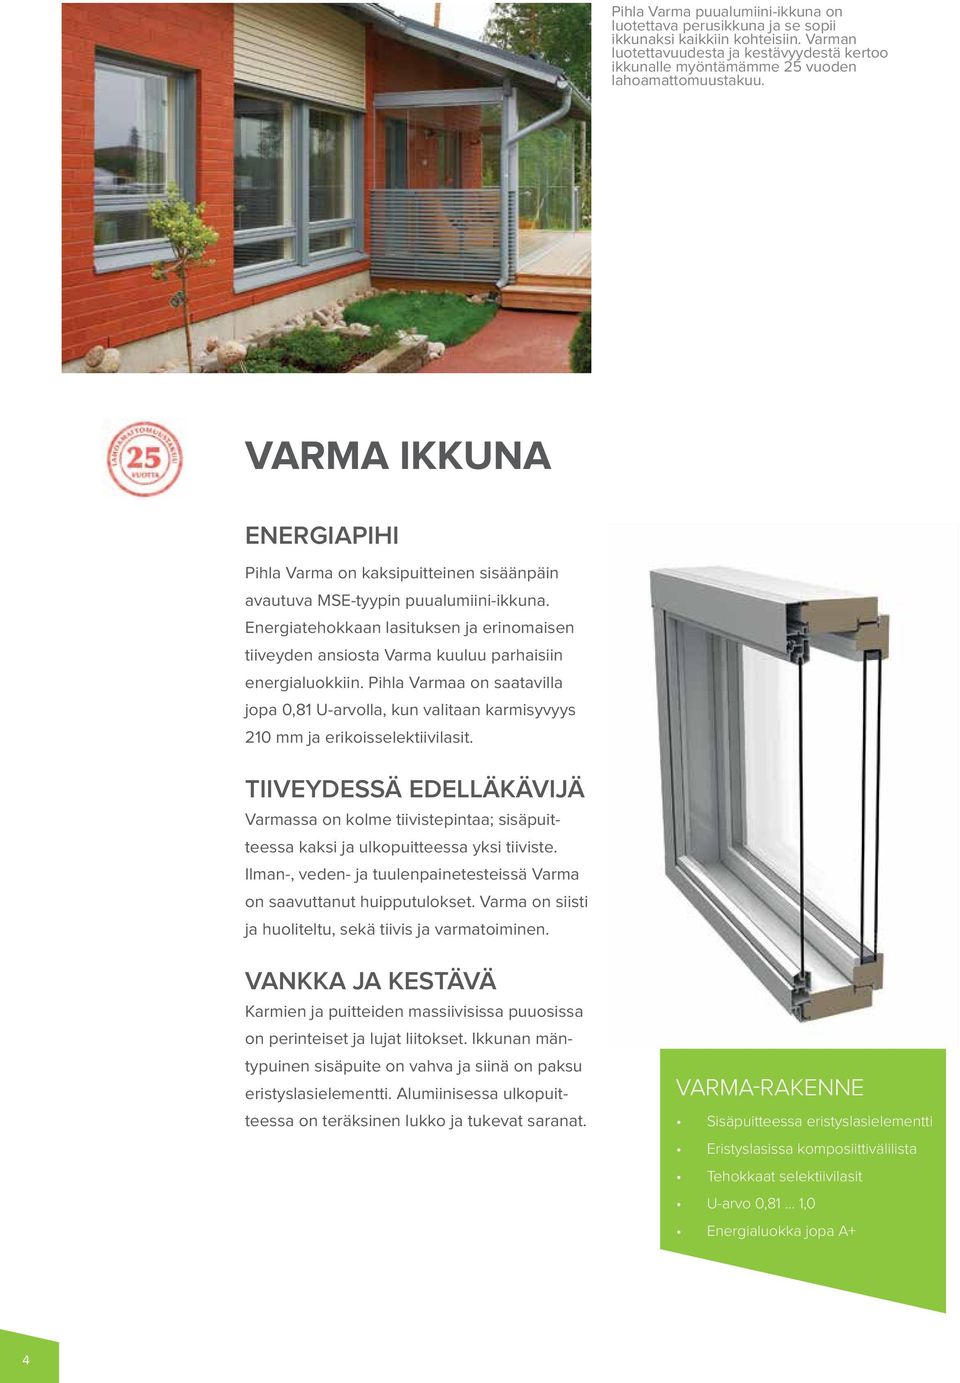 Energiatehokkaan lasituksen ja erinomaisen tiiveyden ansiosta Varma kuuluu parhaisiin energialuokkiin.